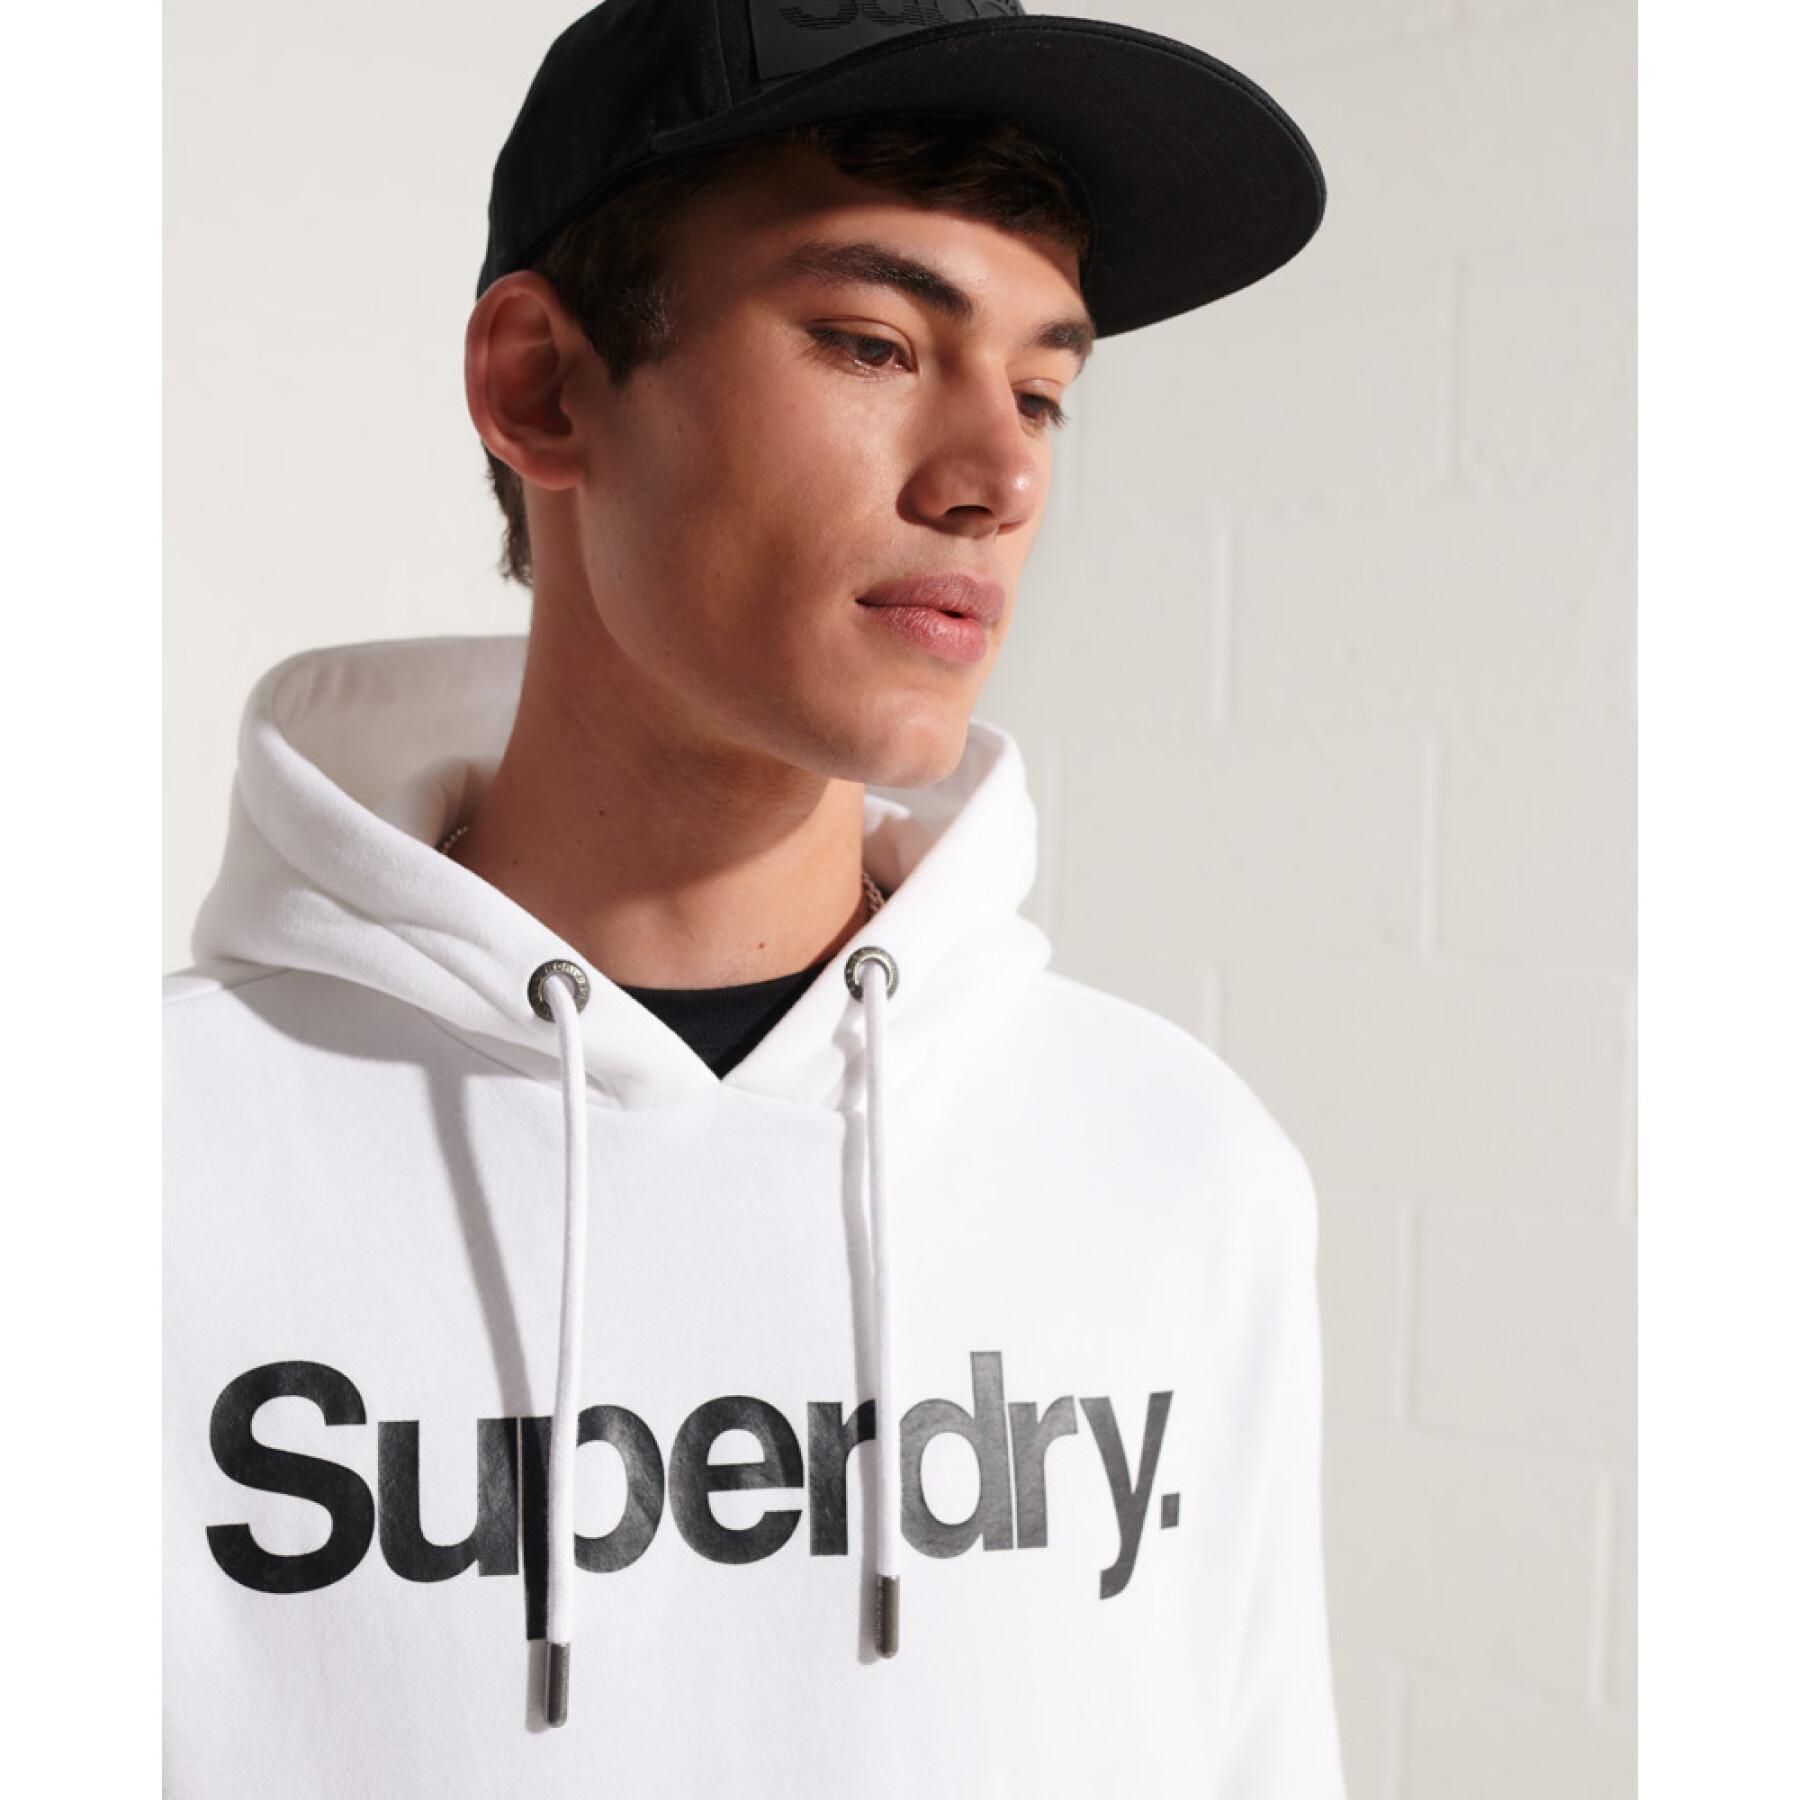 Sudadera con capucha Superdry Core Logo